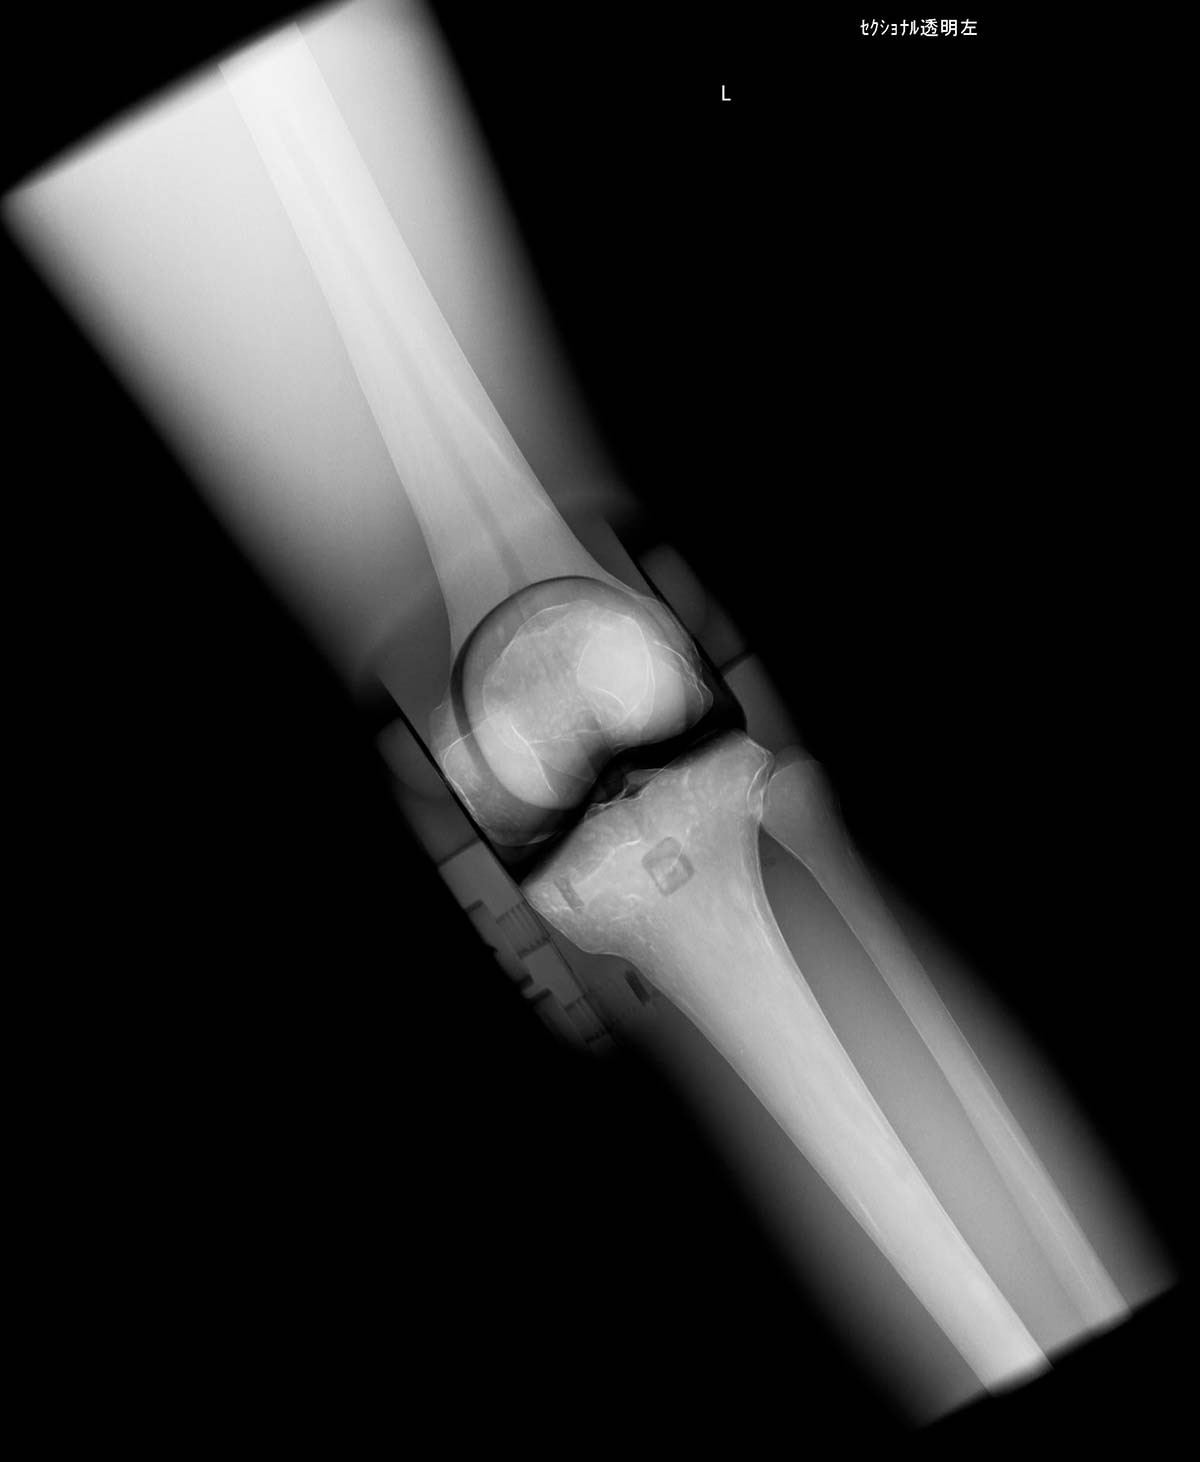 Röntgen-Teilphantom mit künstlichen Knochen - Rechtes Knie, transparent 1